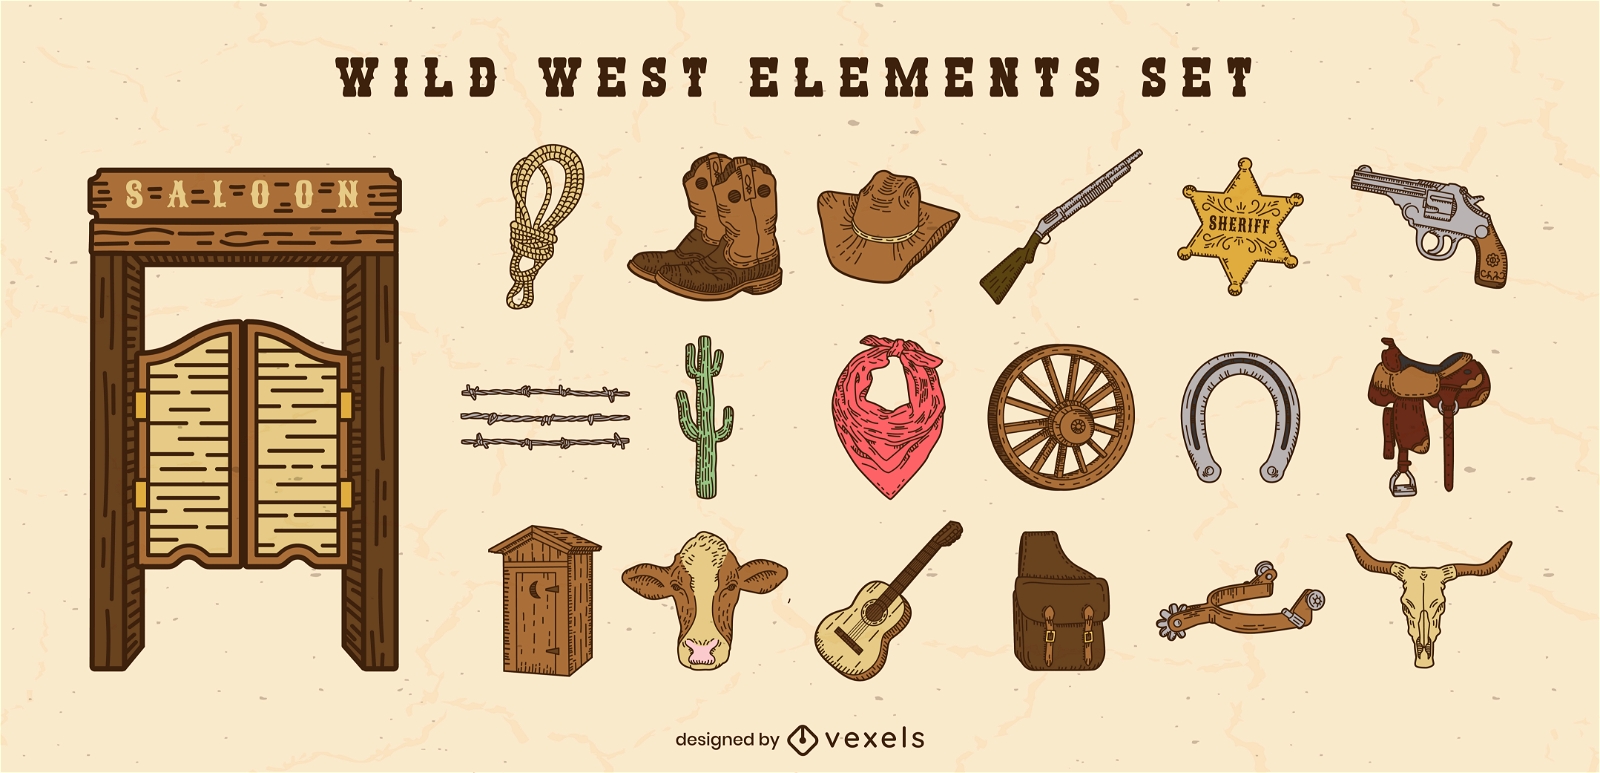 Wild west elements set 